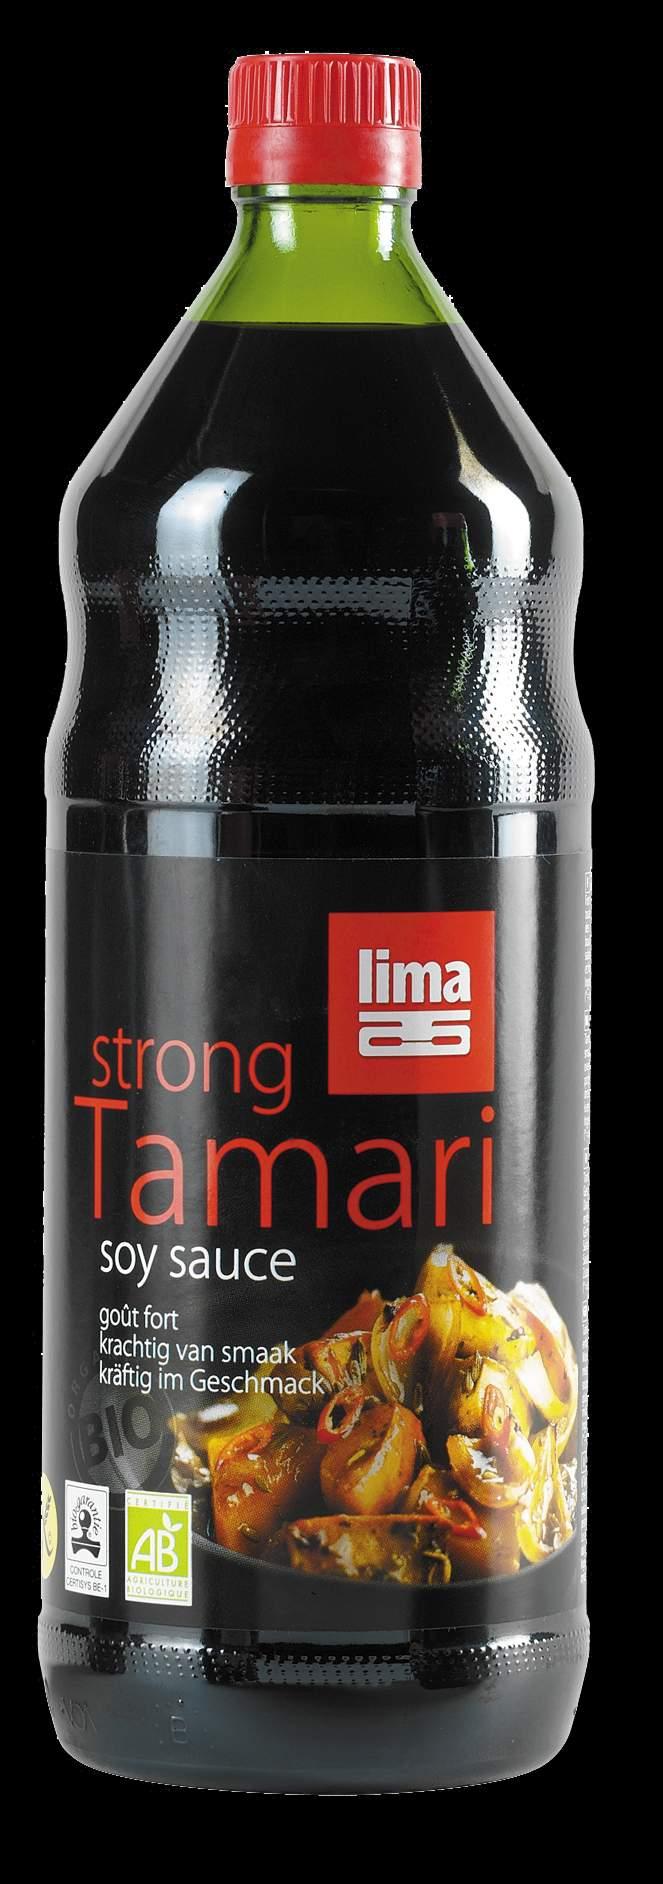 TAMARI STRONG Attorno Tamari strong Descrizione Salsa di soia da